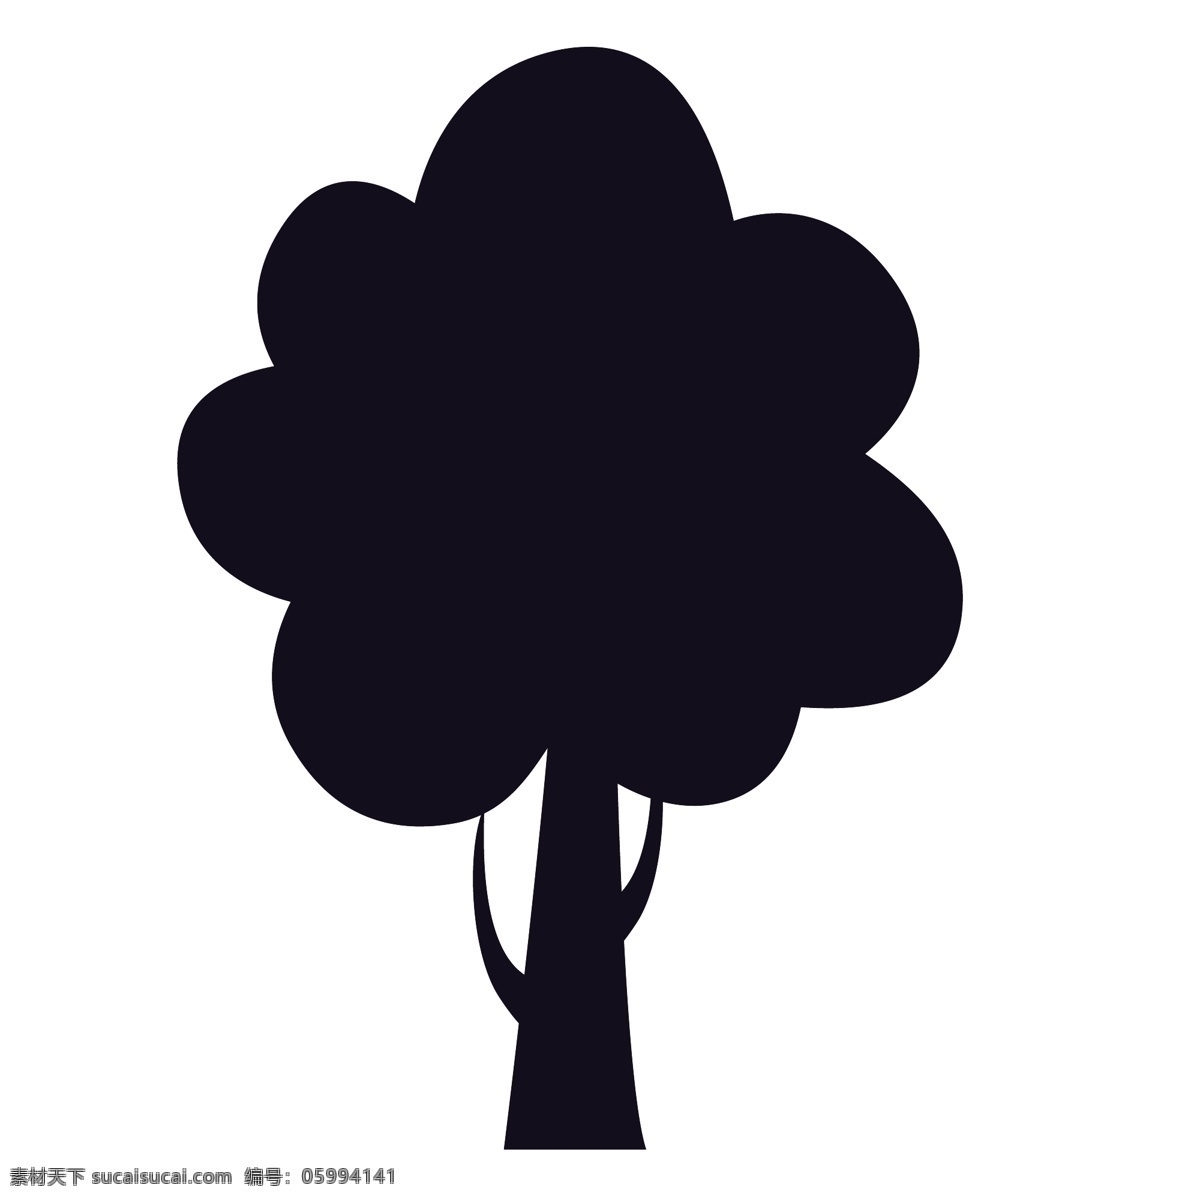 黑色 创意 装饰图案 植物 树木 树枝 树干 剪影 涂鸦 图案 简约 绘画 树叶 树苗 素描 椰子树 松树 剪纸